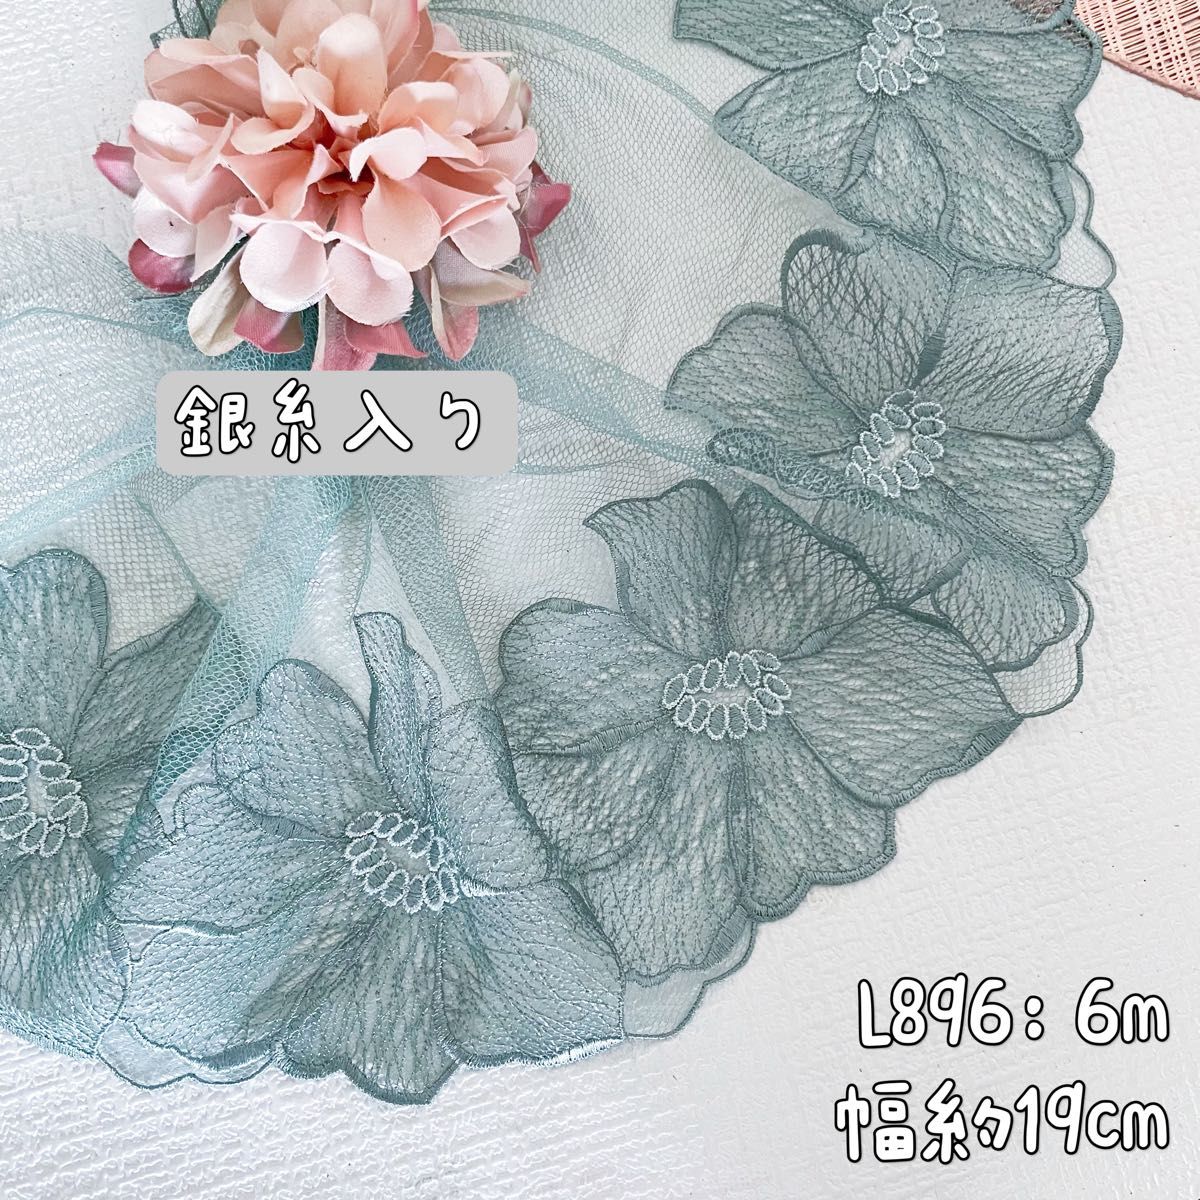 L896【セール6m】銀糸入り繊細な大きな花刺繍スカイラップチュールレース 豆緑